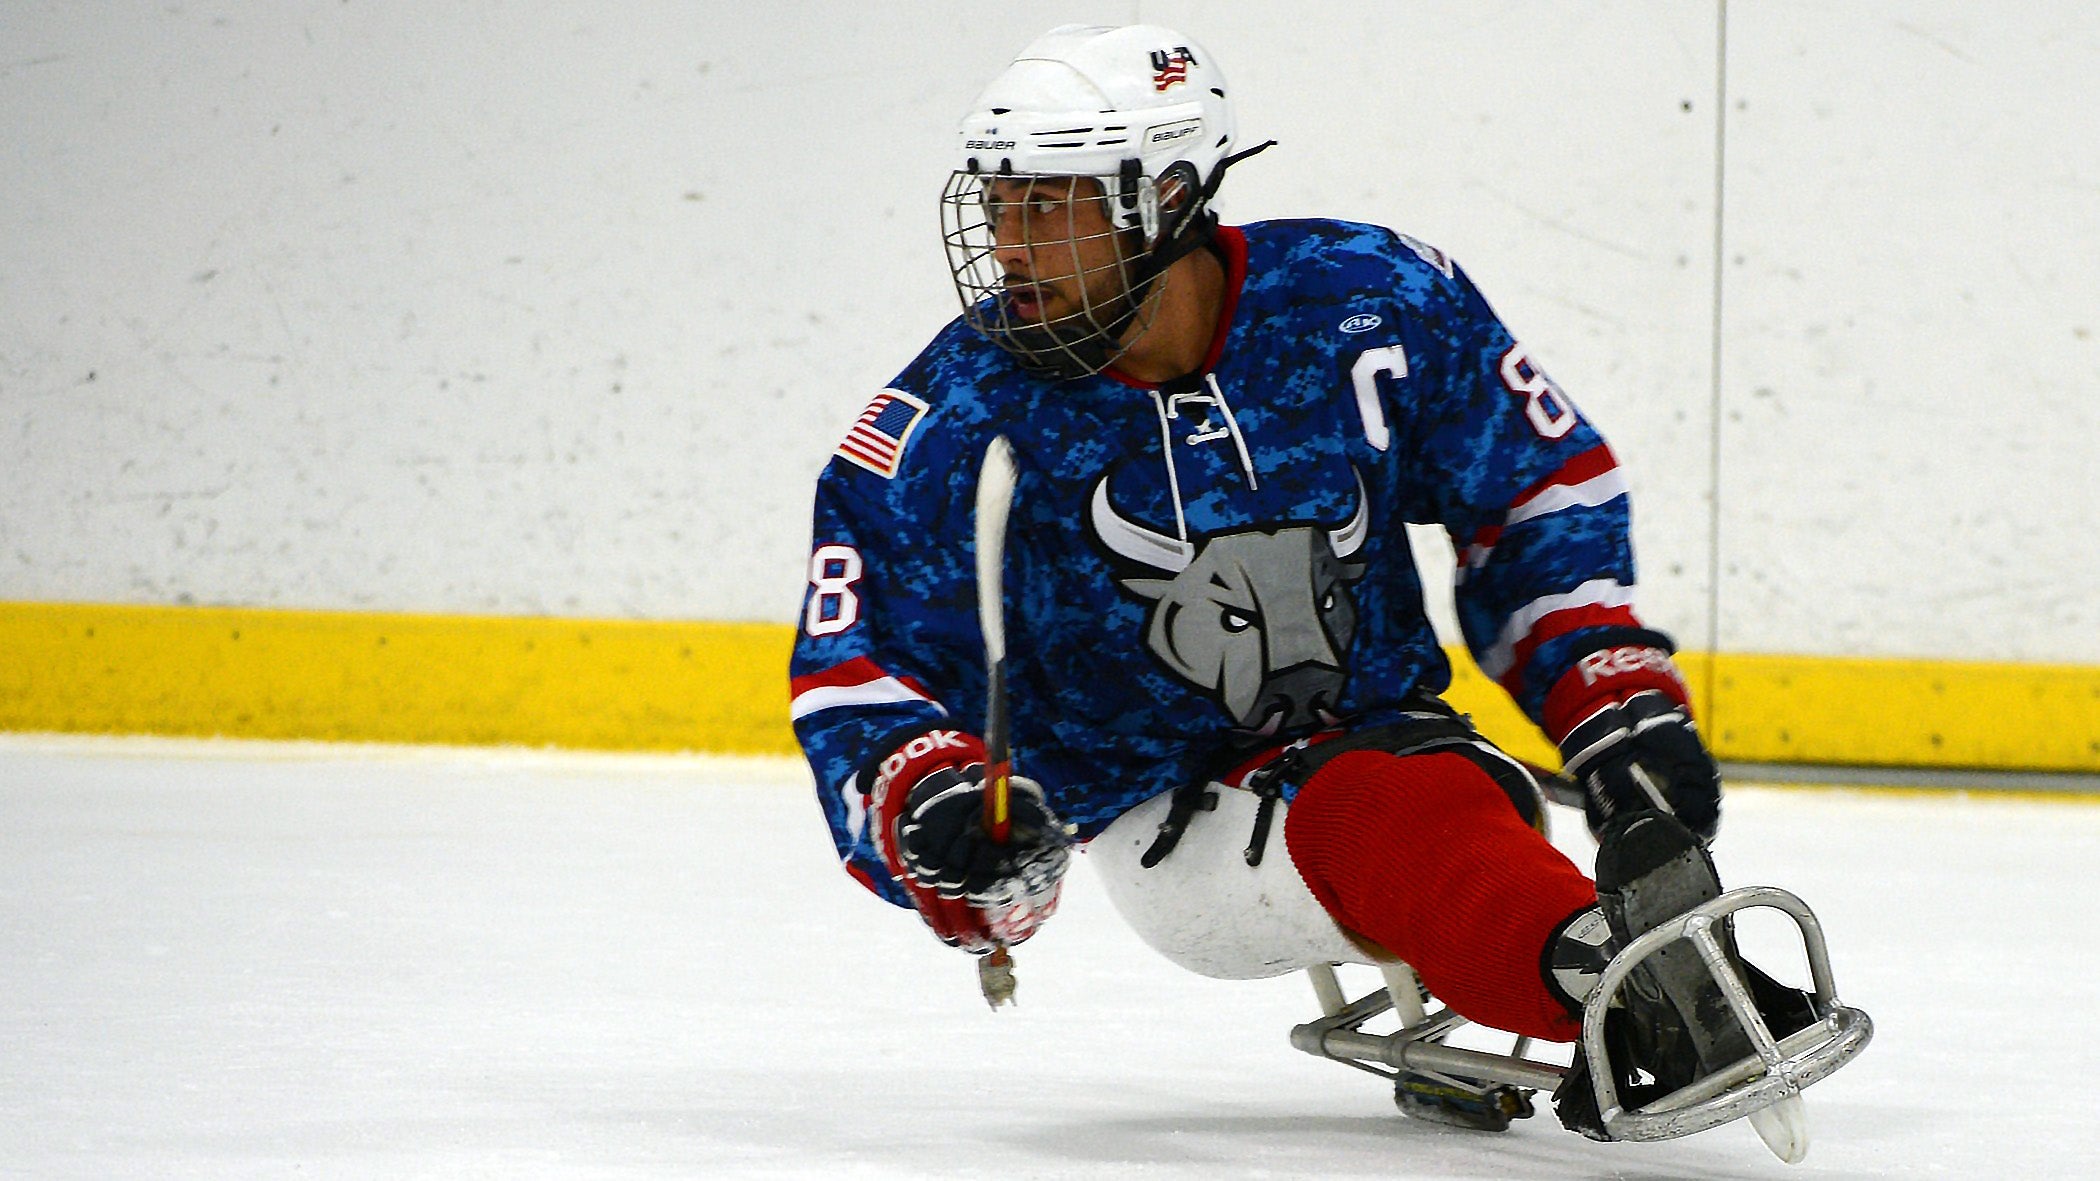 Rico Roman, paralympian, plays hockey